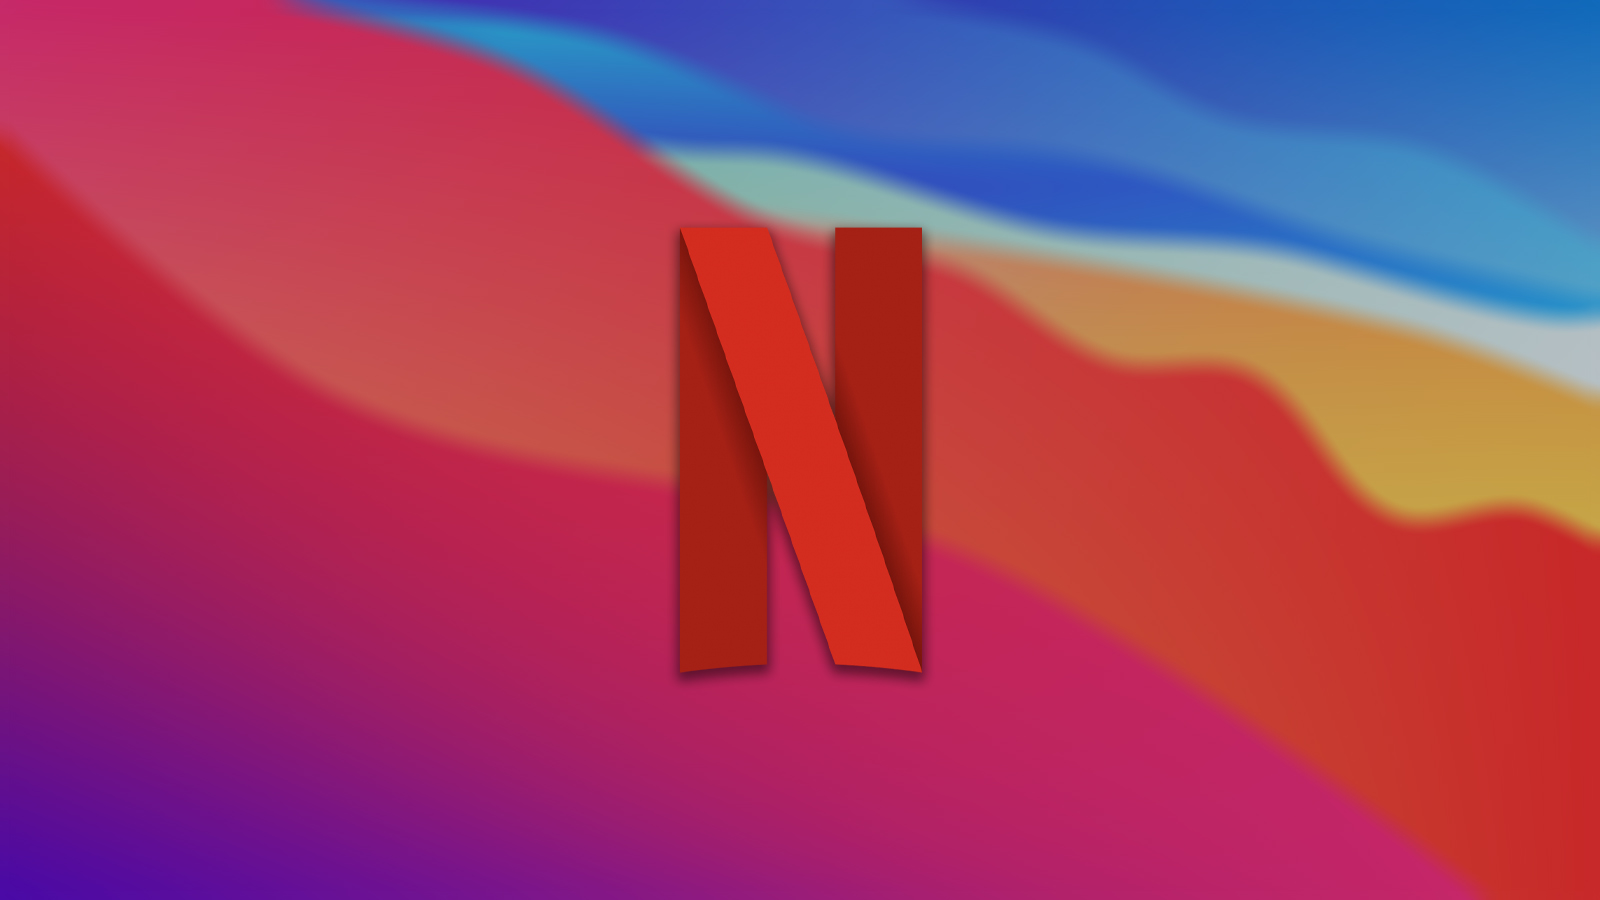 أخبار 19 أغسطس 2021 0 تعليقات يأتي Netflix بوظيفة صوت مثالية لأجهزة iPhone و iPad